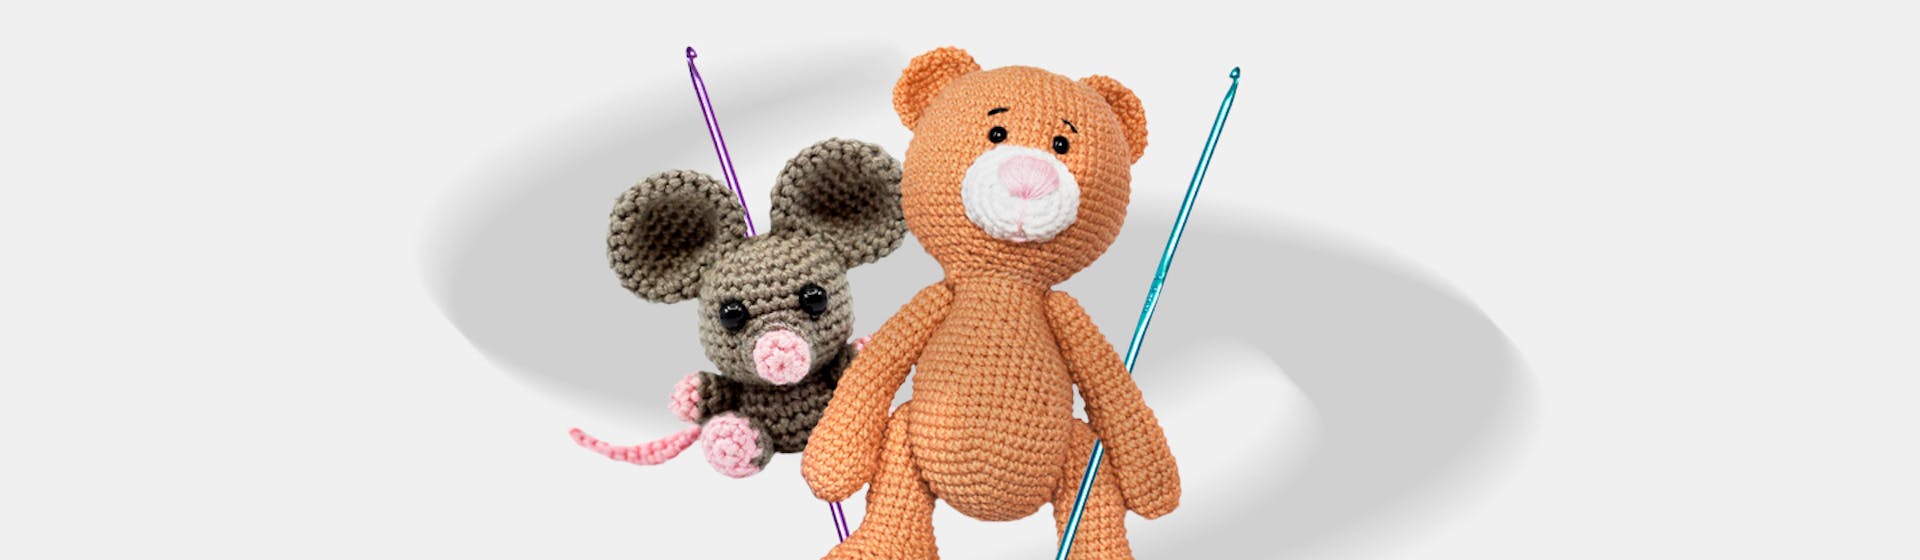 Aprende cómo hacer amigurumis y crea tu propio zoológico en crochet